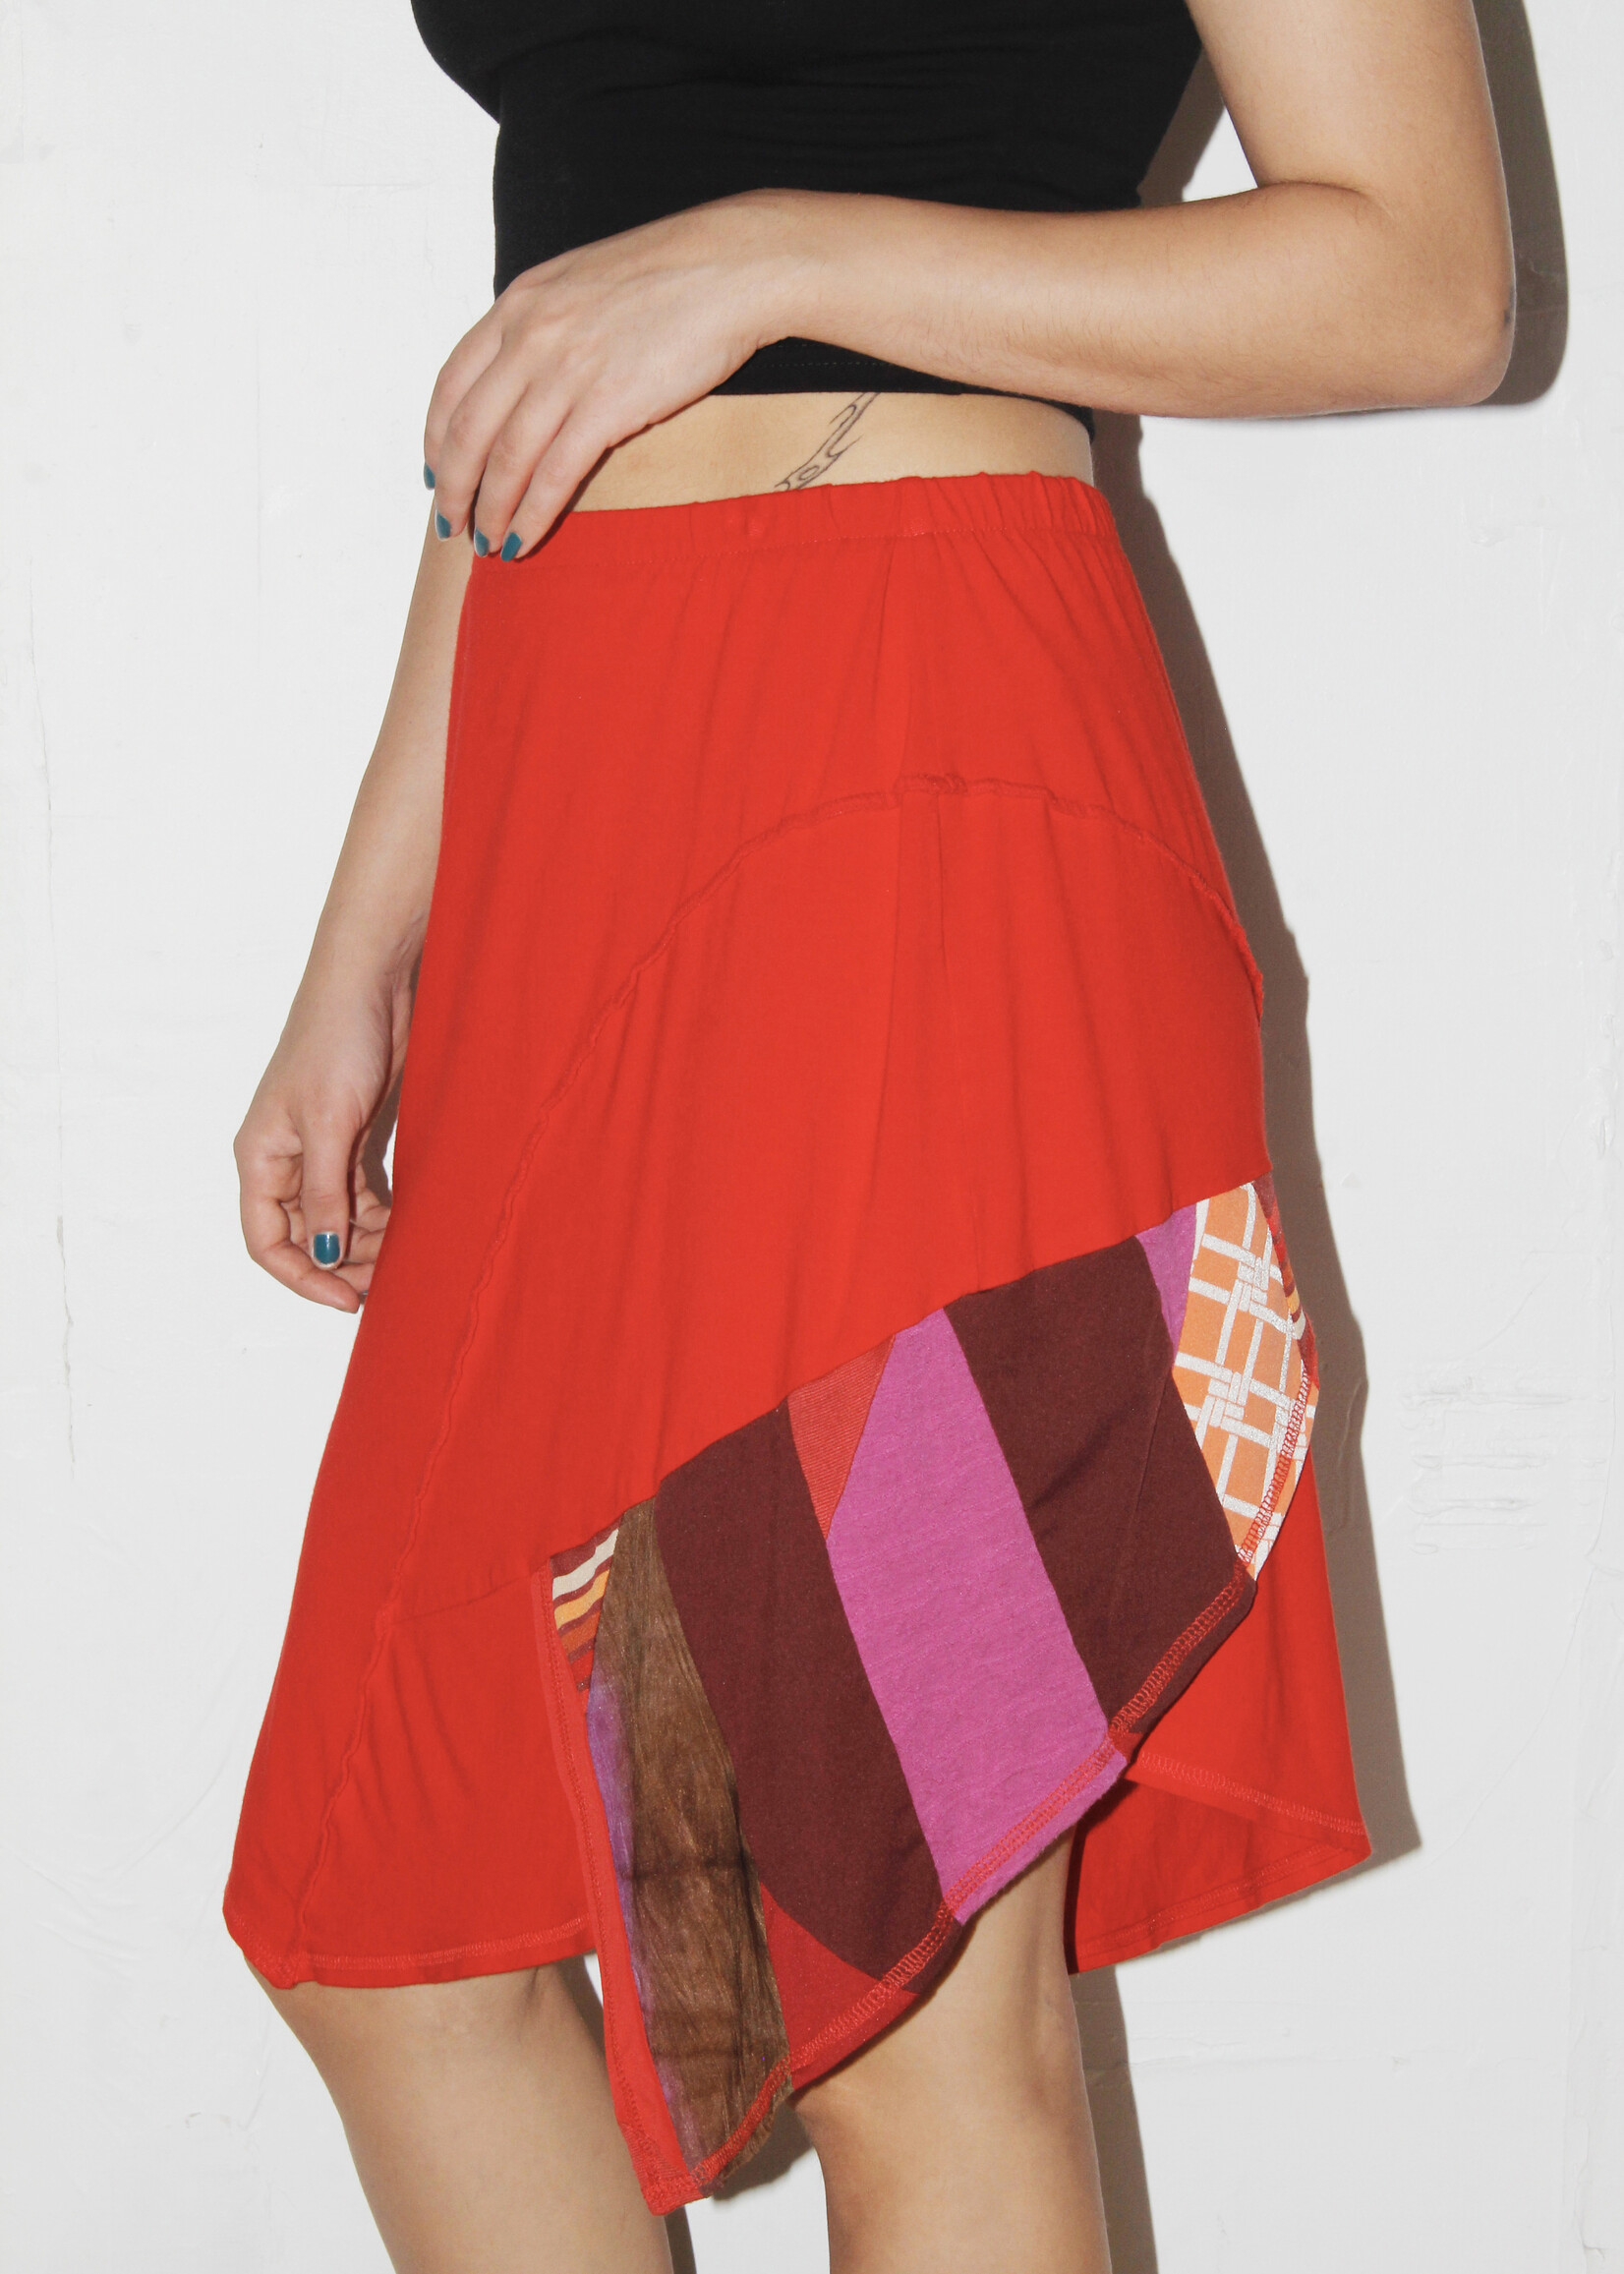 Vintage Vintage Red Patchwork Skirt - S/M